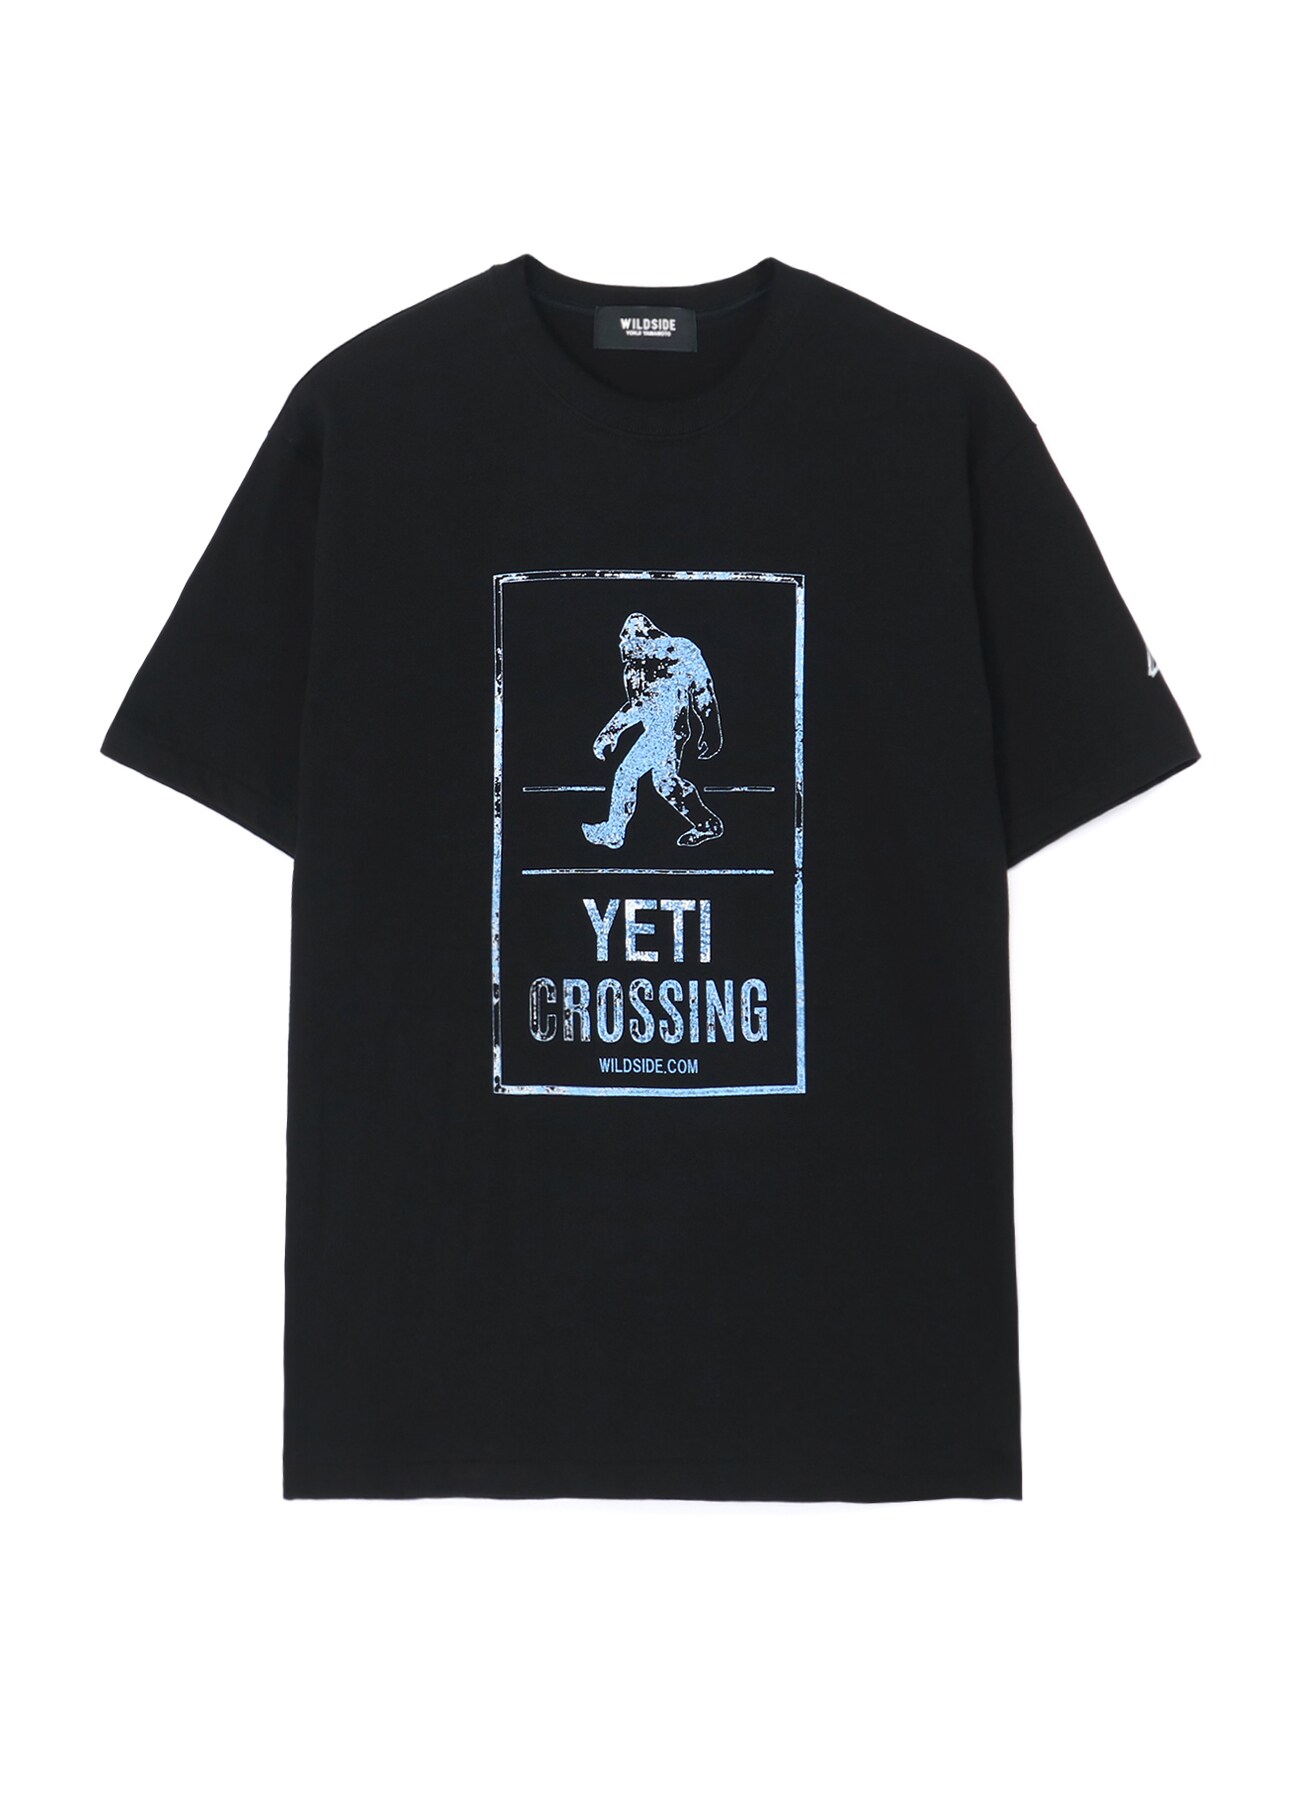 YETI CROSSING T-shirt